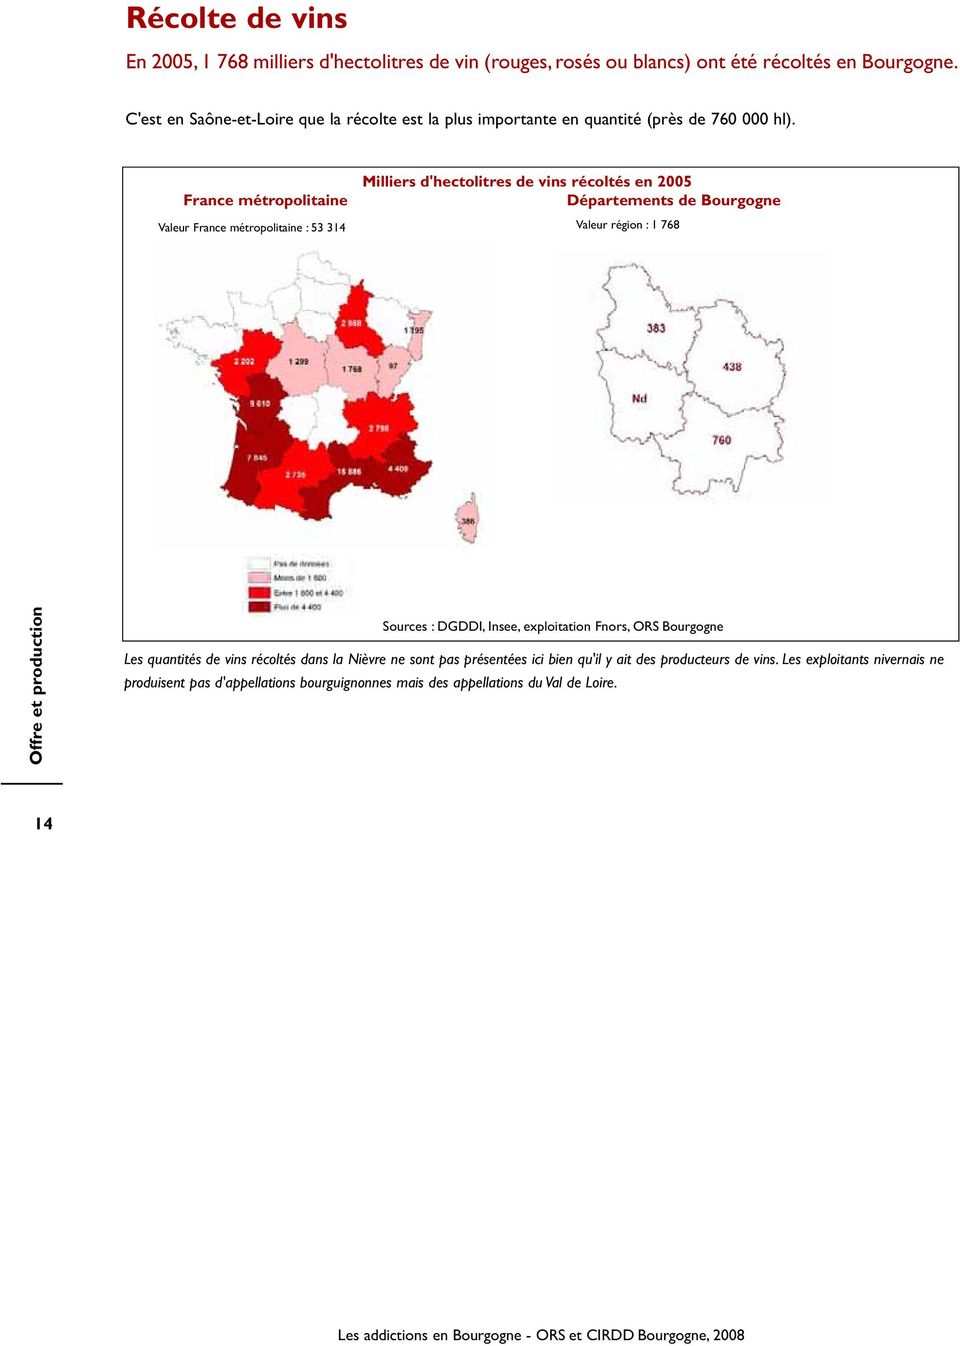 France métropolitaine Valeur France métropolitaine : 53 314 Milliers d'hectolitres de vins récoltés en 2005 Départements de Bourgogne Valeur région : 1 768 Offre et